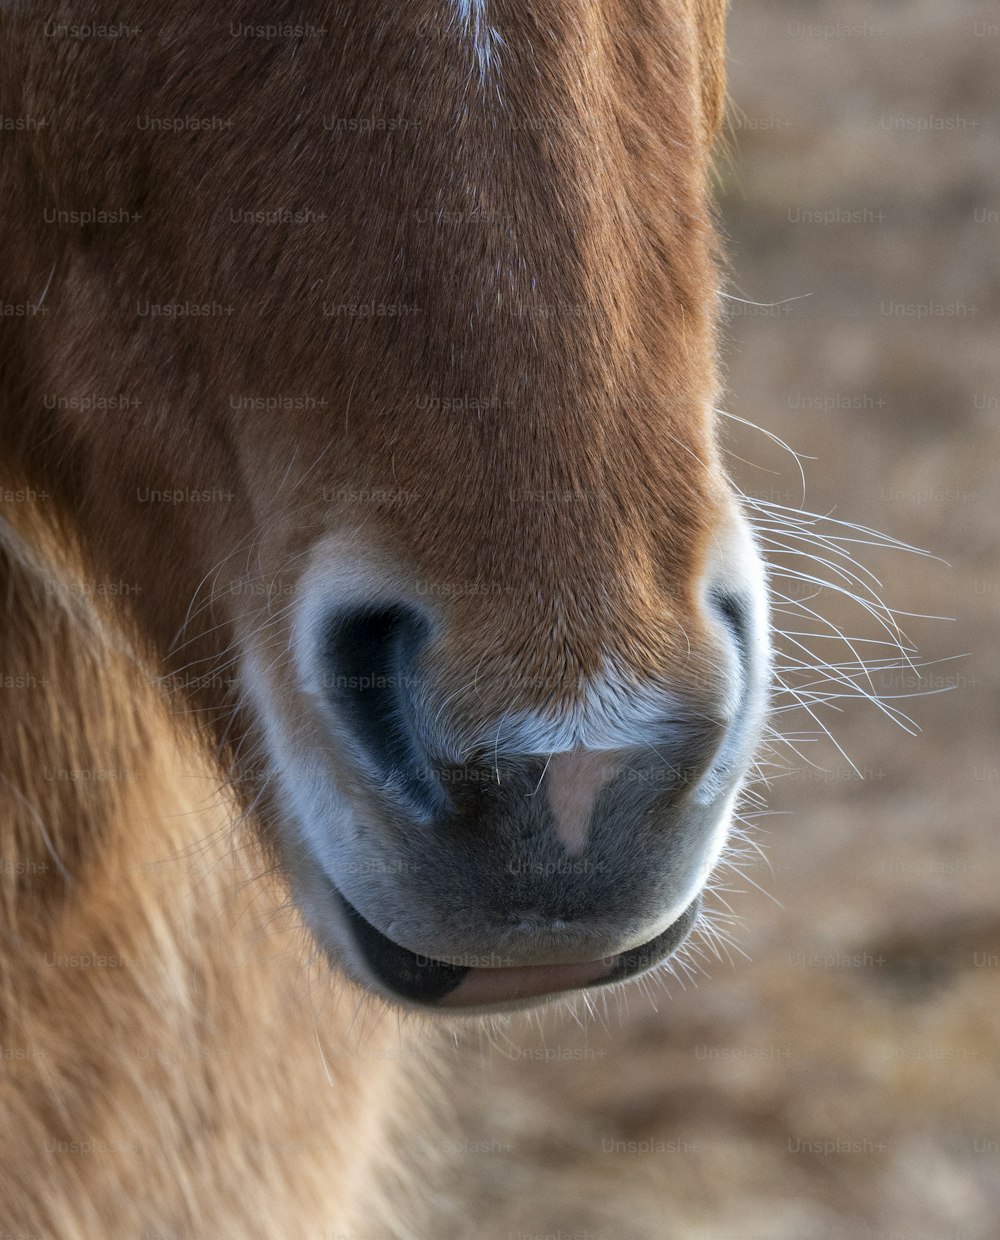 Un primer plano de la cara de un caballo con un fondo borroso